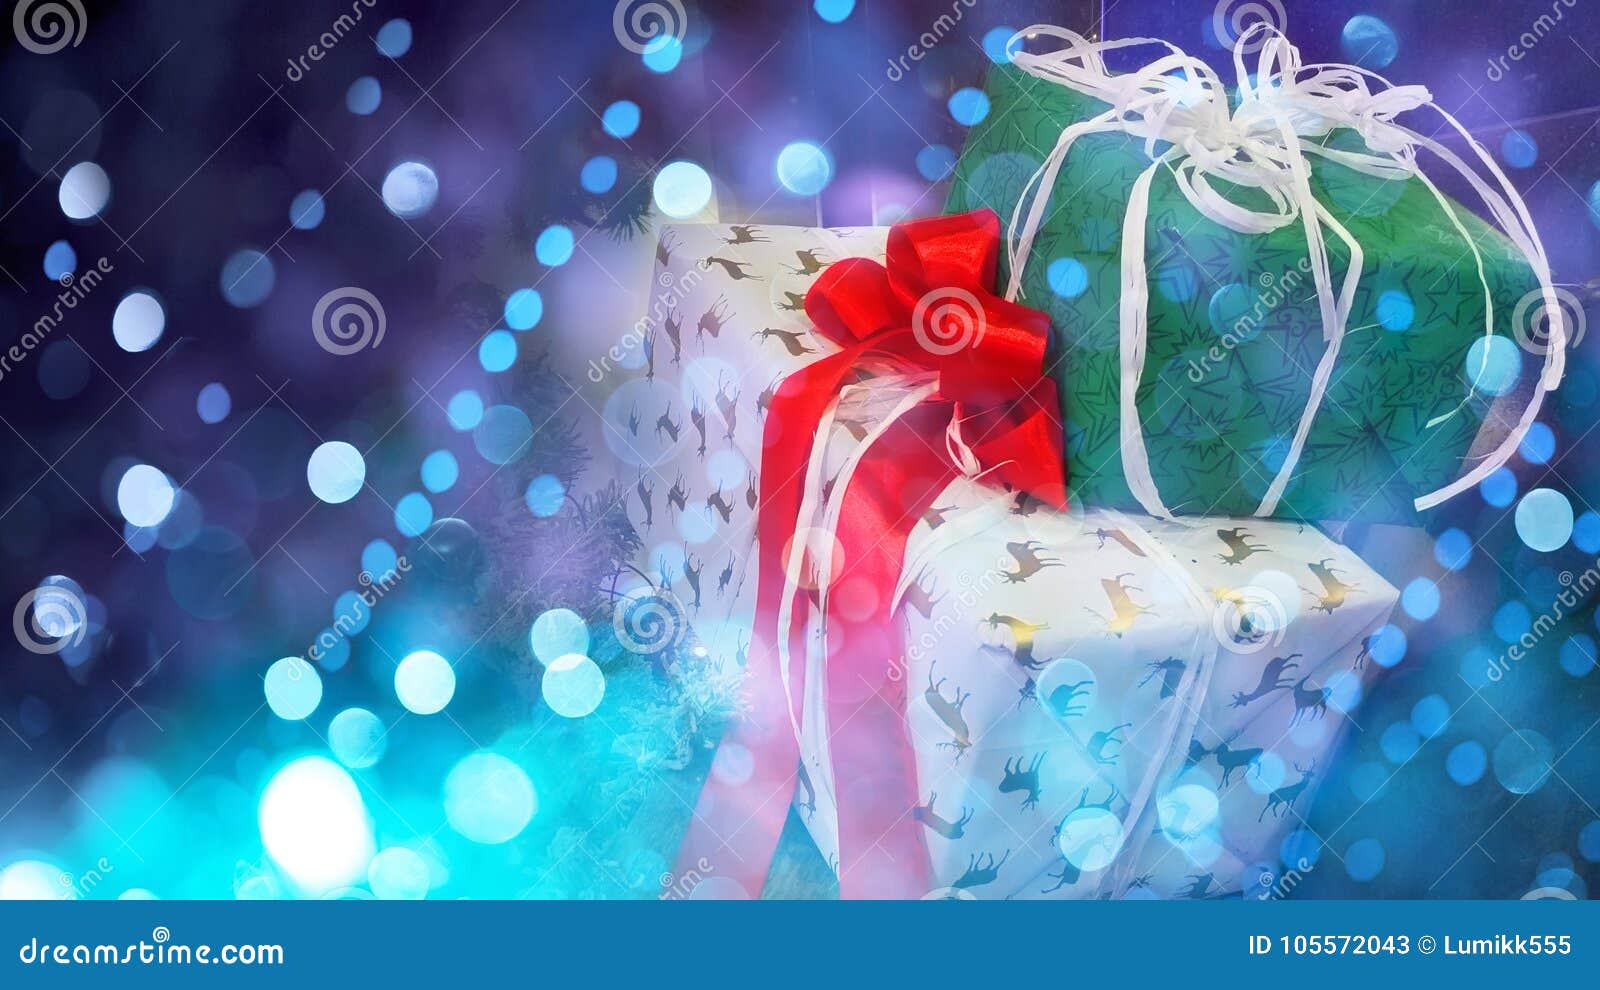 看板卡圣诞节问候. 与五颜六色的礼物的美好的欢乐圣诞节背景 假日与拷贝空间的问候和邀请卡片 宽银幕装饰网横幅或飞行物与礼物在欢乐箱子有弓的